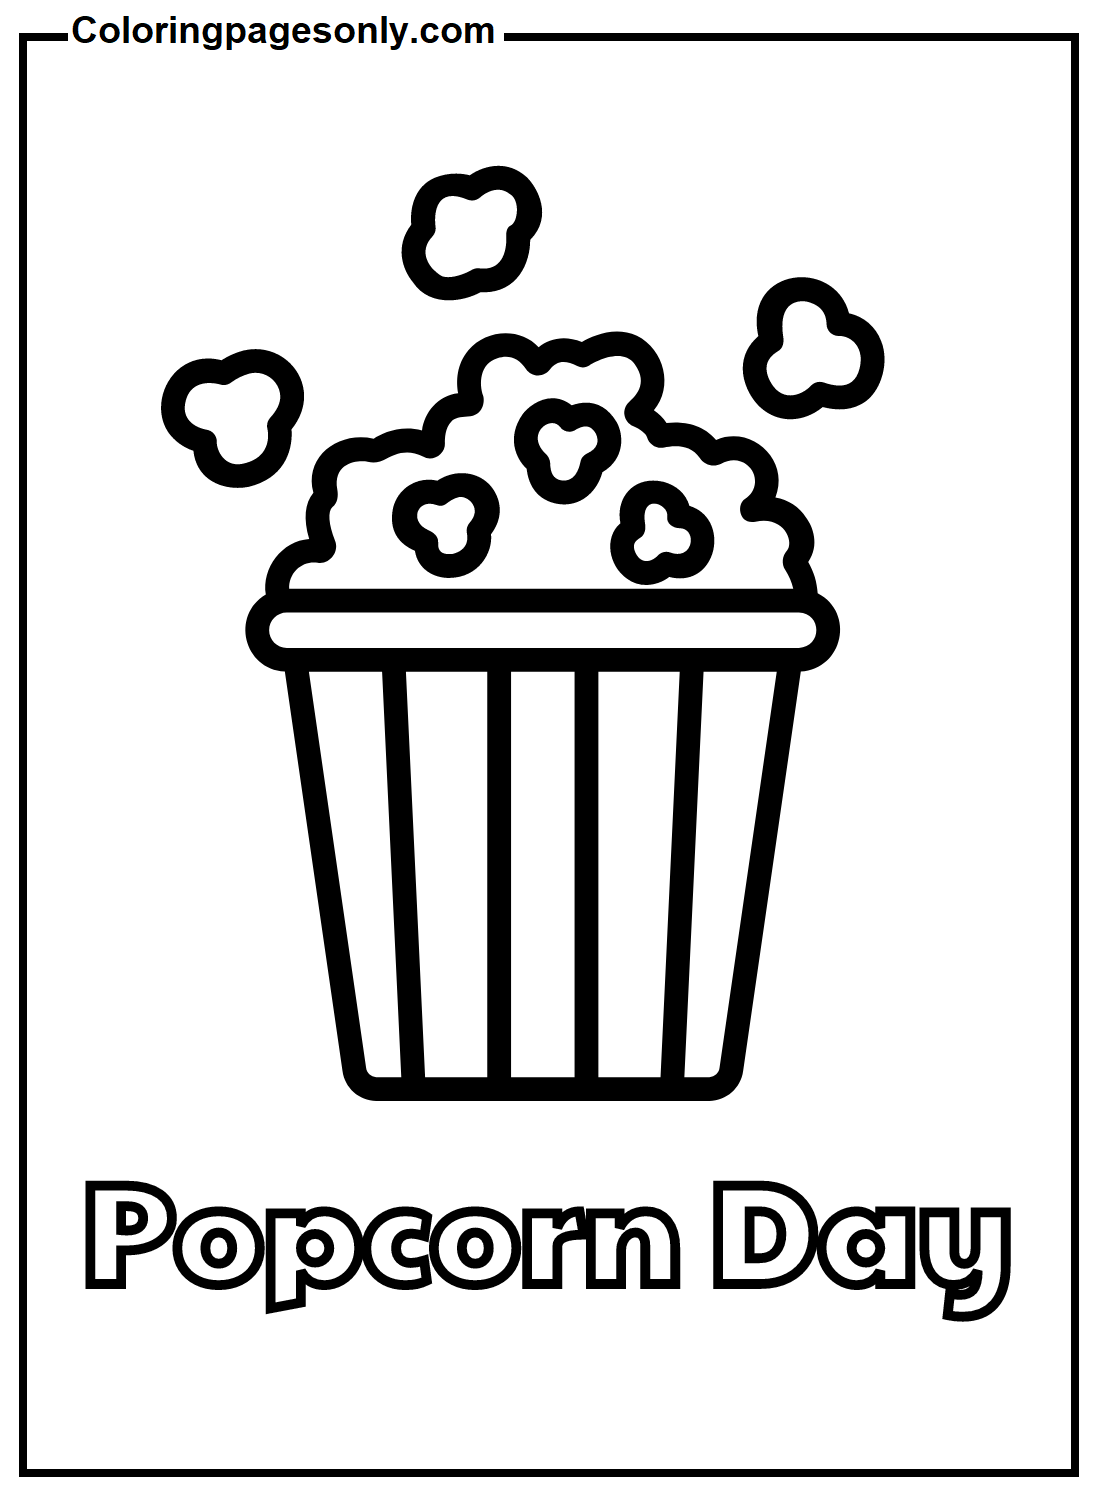 Popcorn-Tag von Popcorn